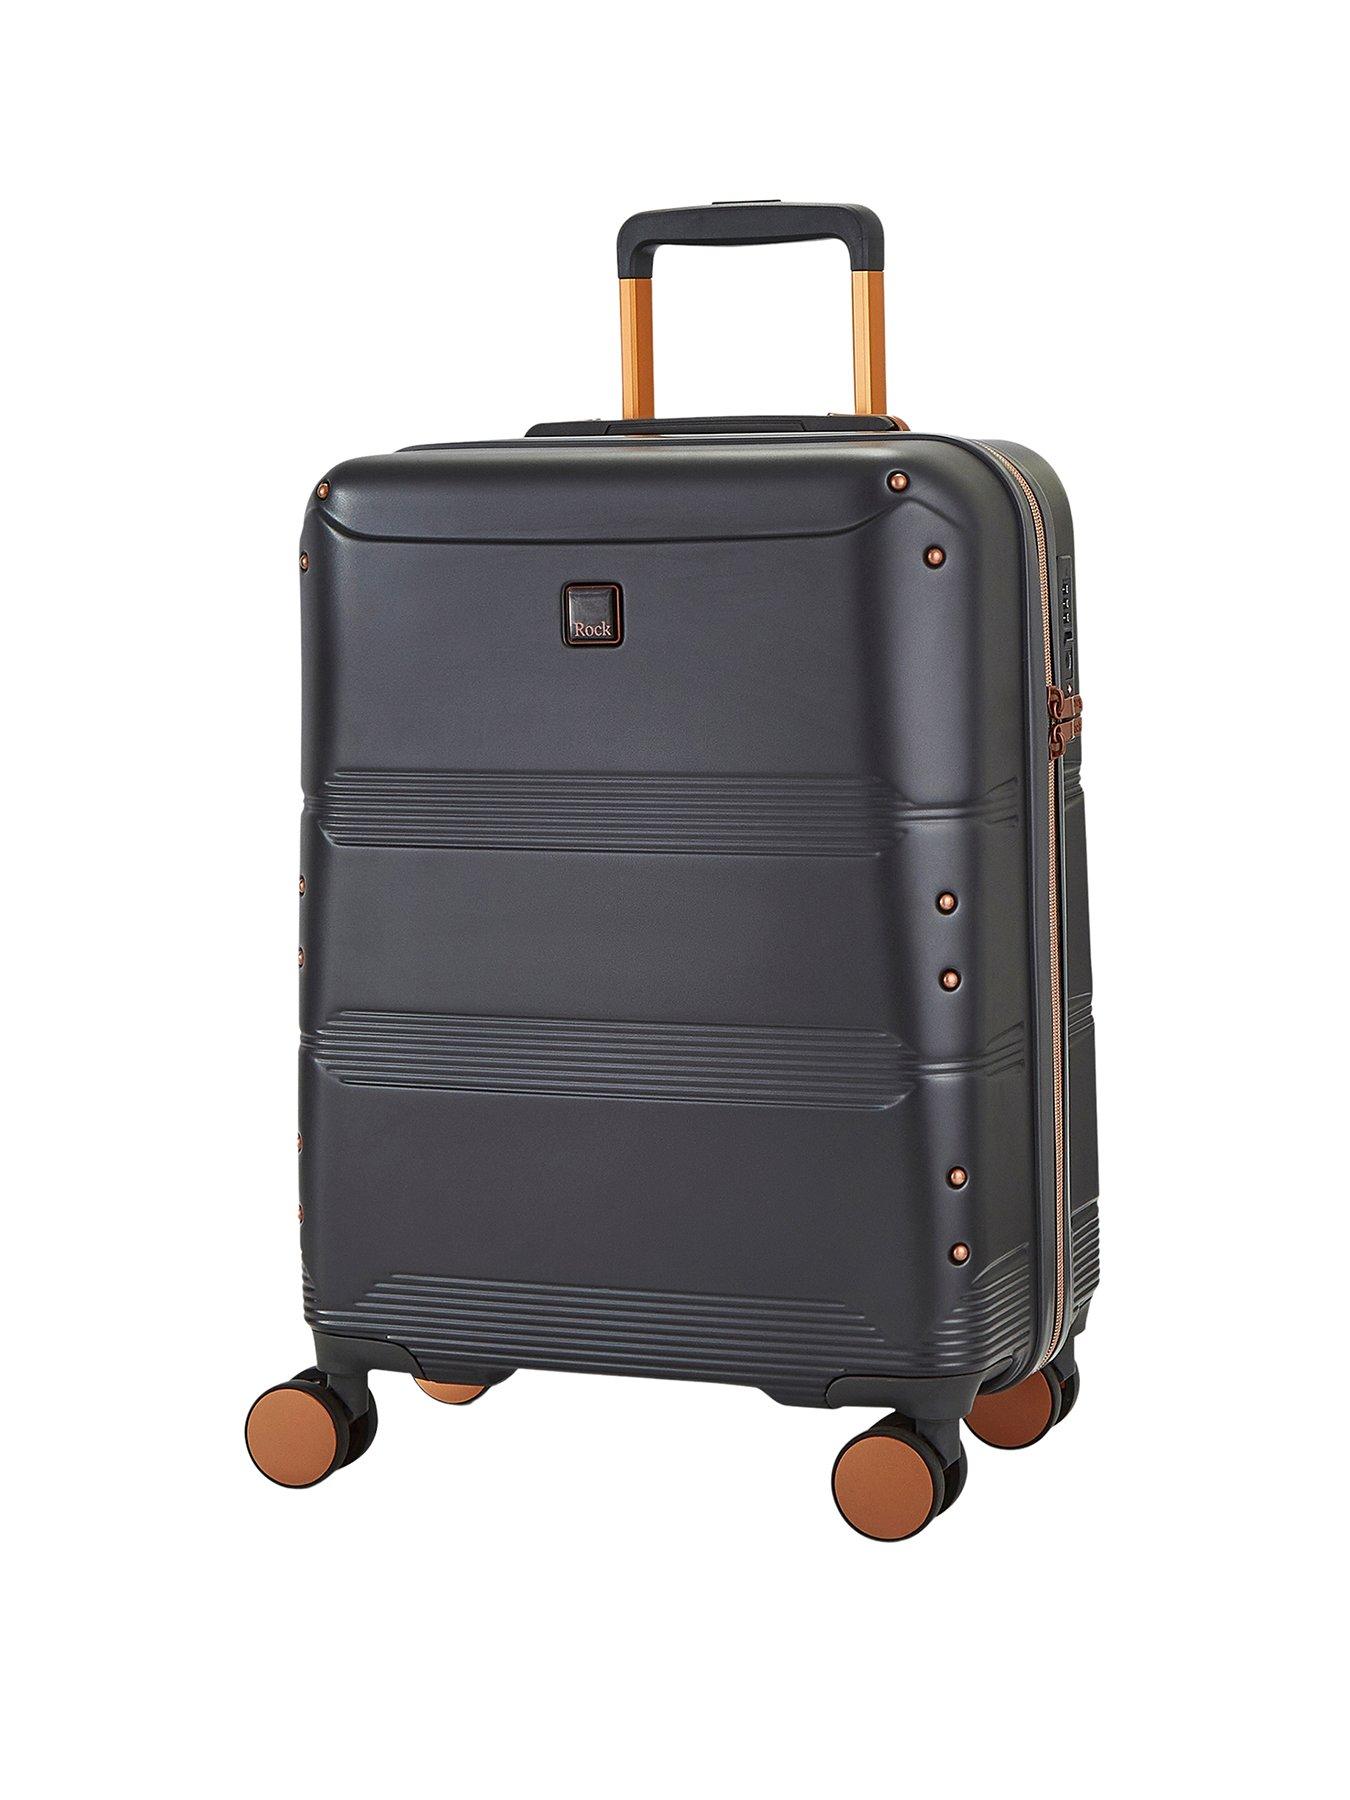 Rock Luggage Mayfair 8 Wheel Hardshell Cabin Suitcase - Charcoal